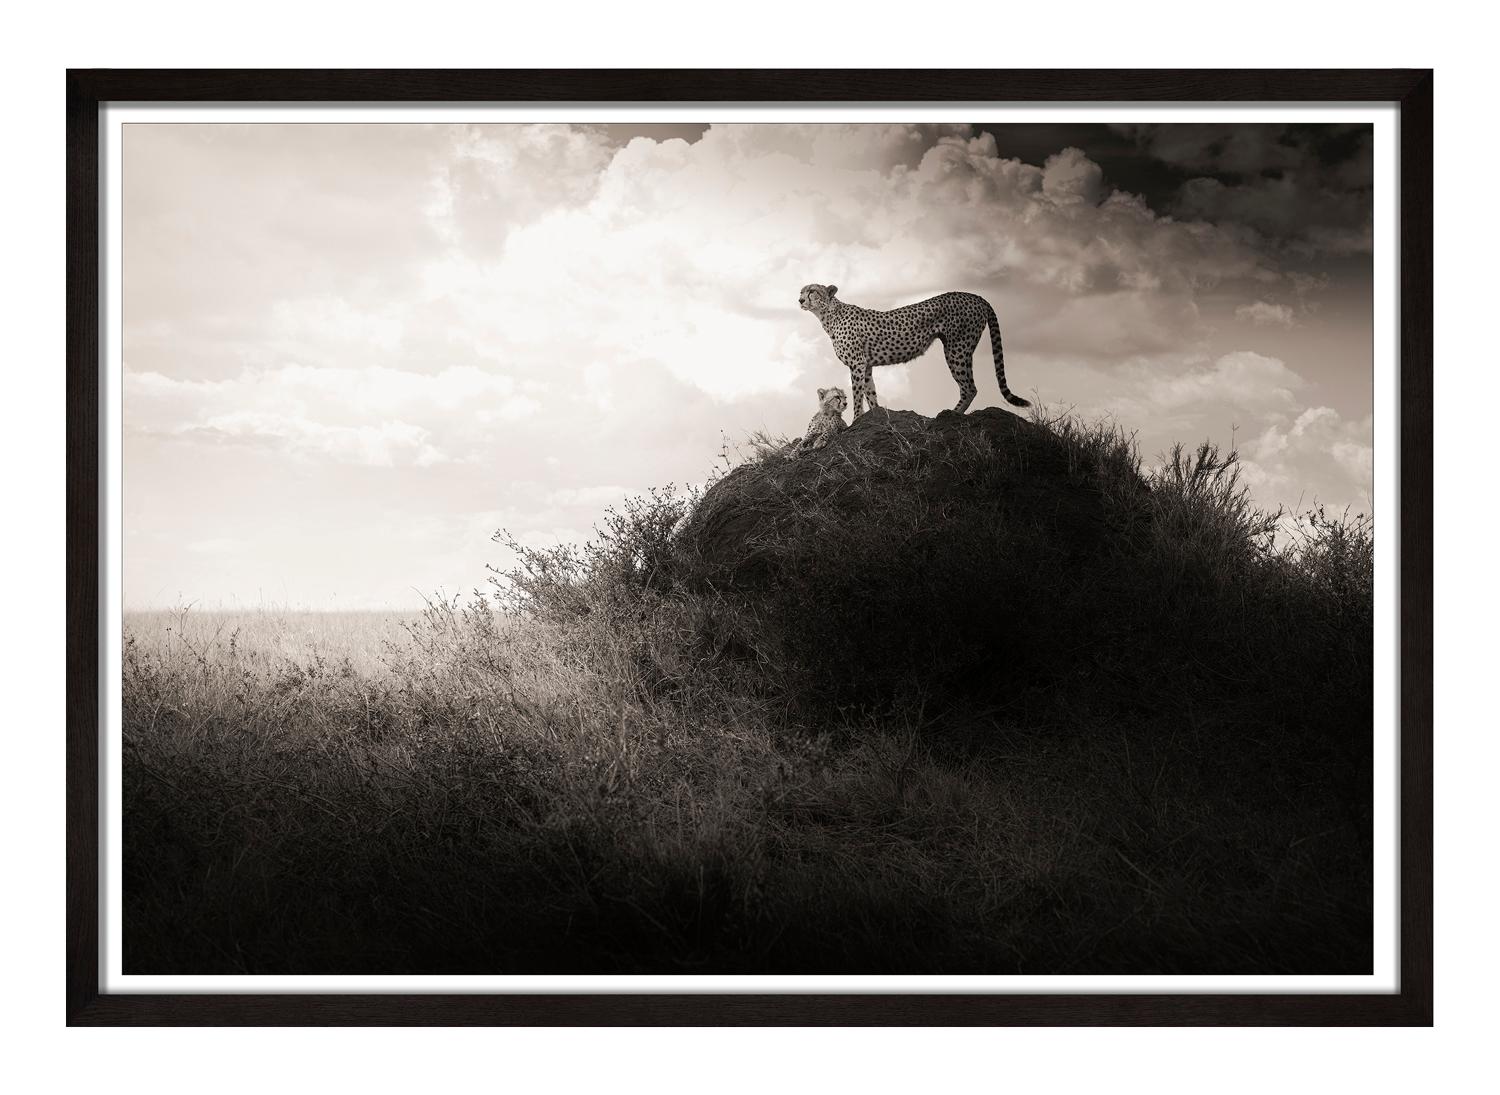 Lean on Me, zeitgenössisch, Schwarz-Weiß, Tier, Afrika, Fotografie, Cheetah – Photograph von Joachim Schmeisser